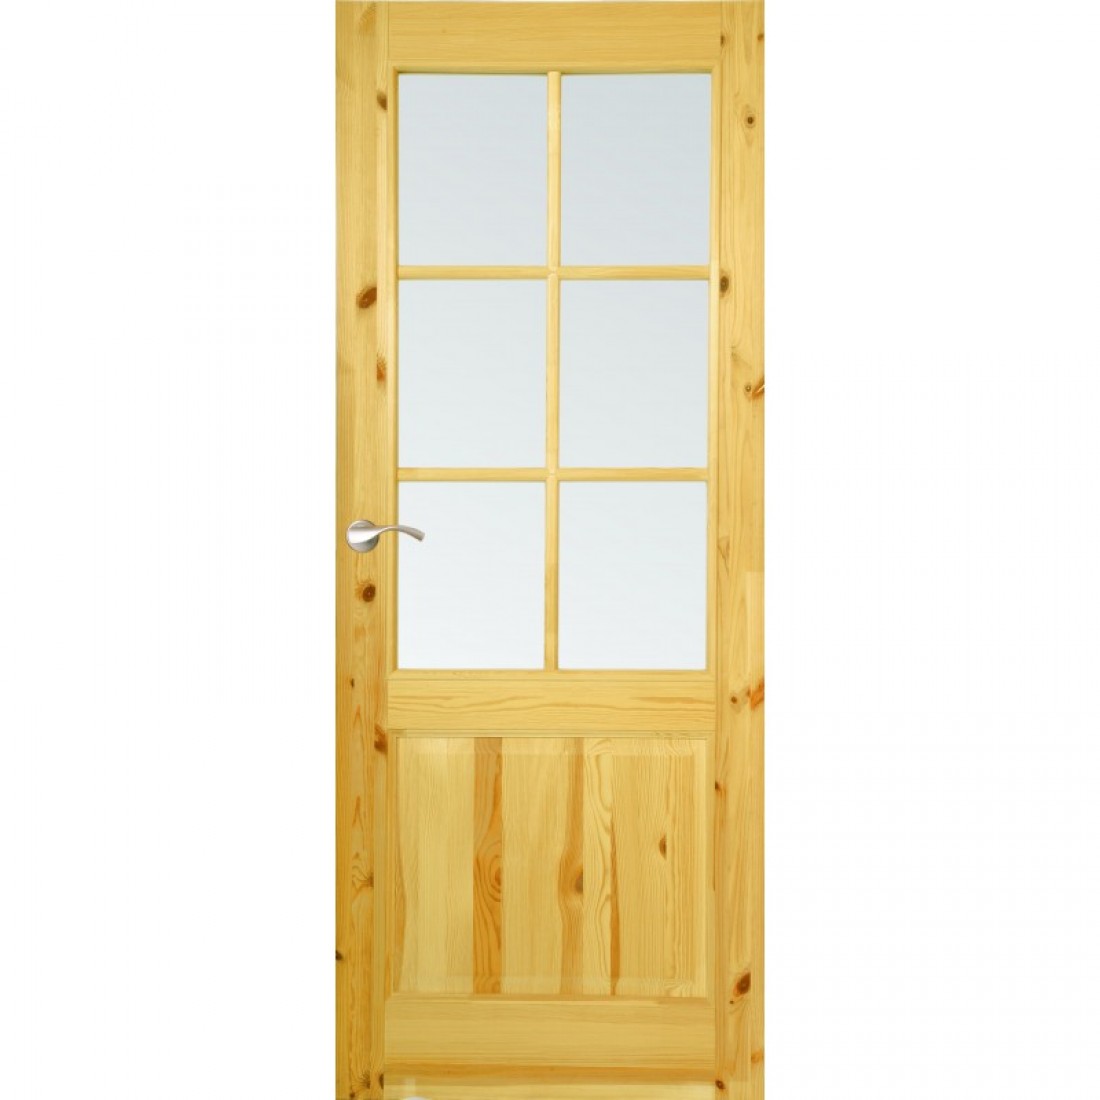 Двери массив стекло. Jeld Wen двери. Финские двери Jeld Wen. Финская входная дверь Jeld-Wen. Полотно дверное Jeld-Wen tradition 51 м8х21 глухое лак прозрачный.